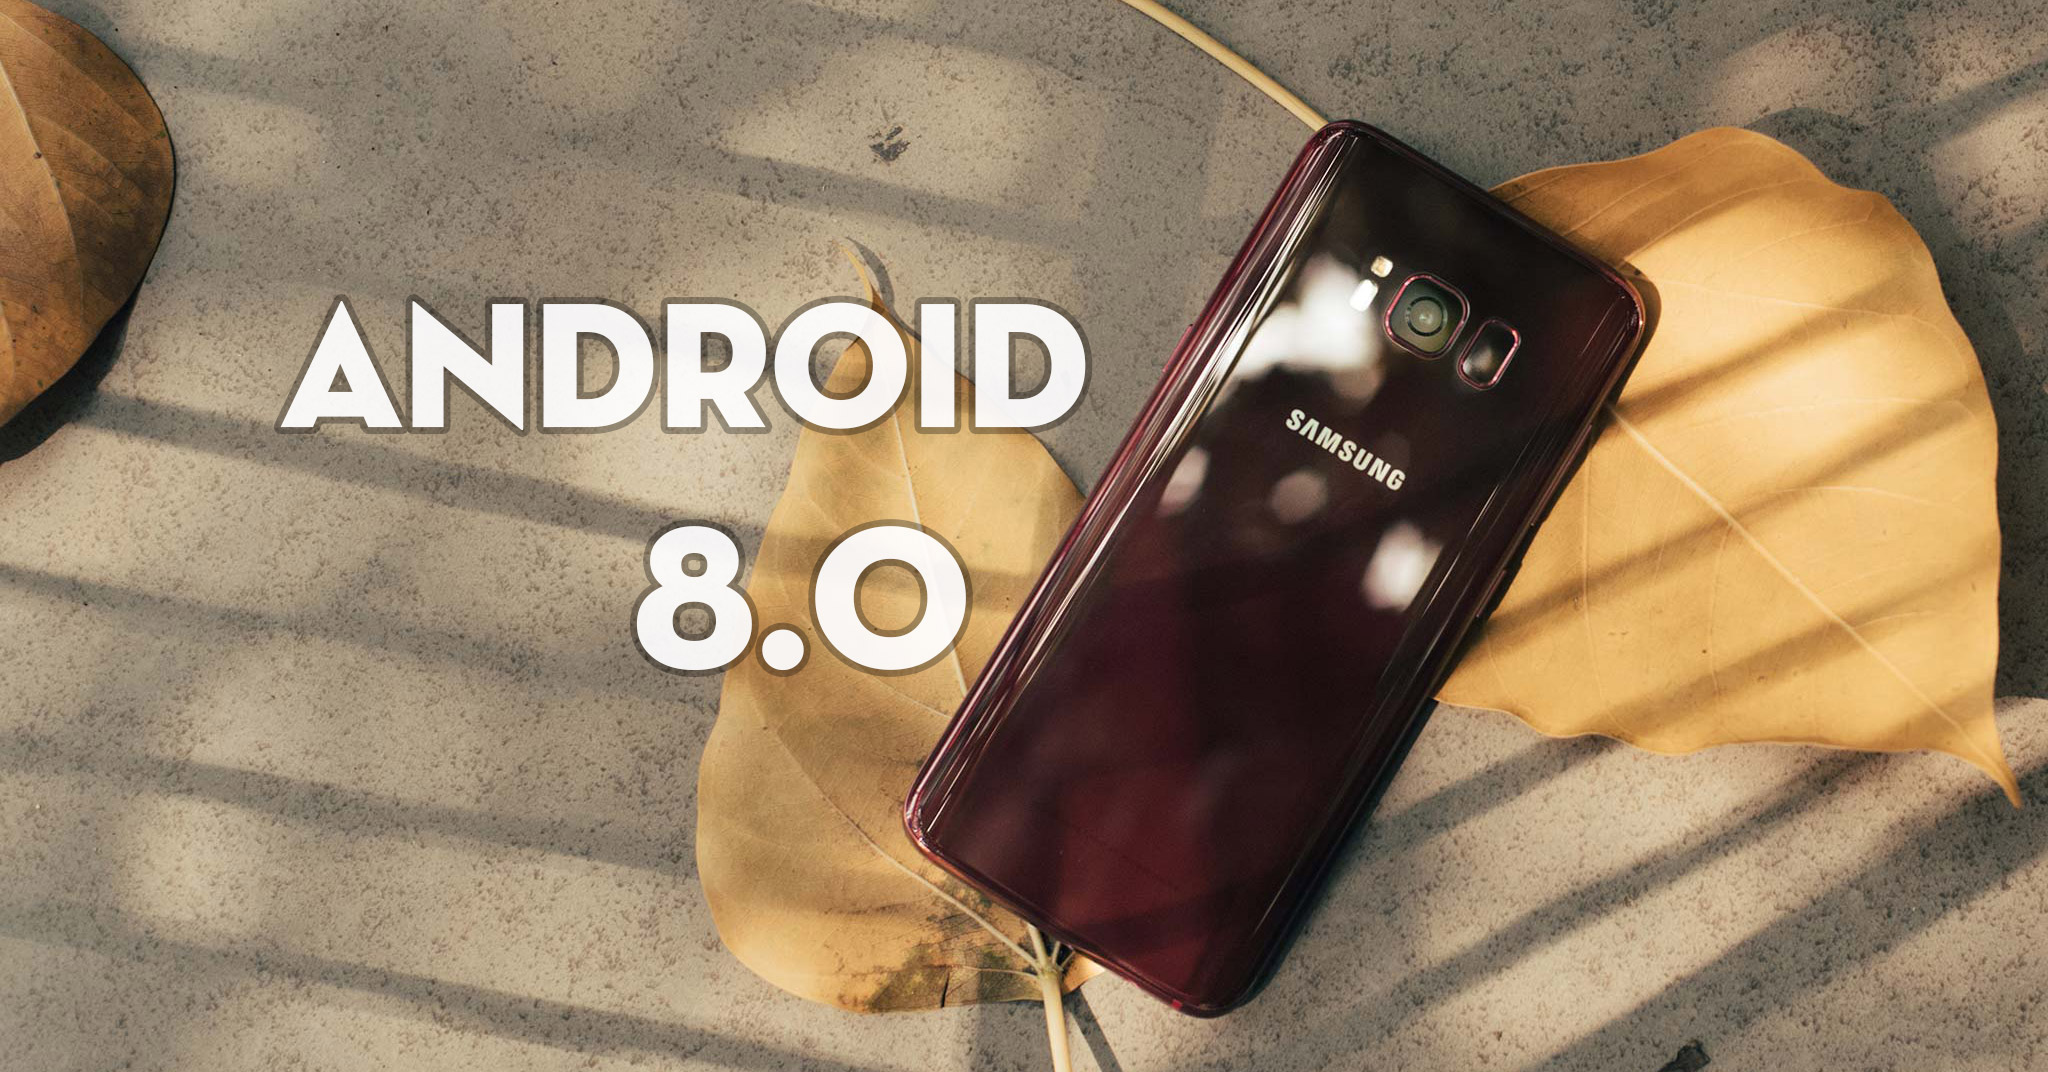 Samsung ngừng update Android 8.0 cho S8 và S8+, không rõ lý do